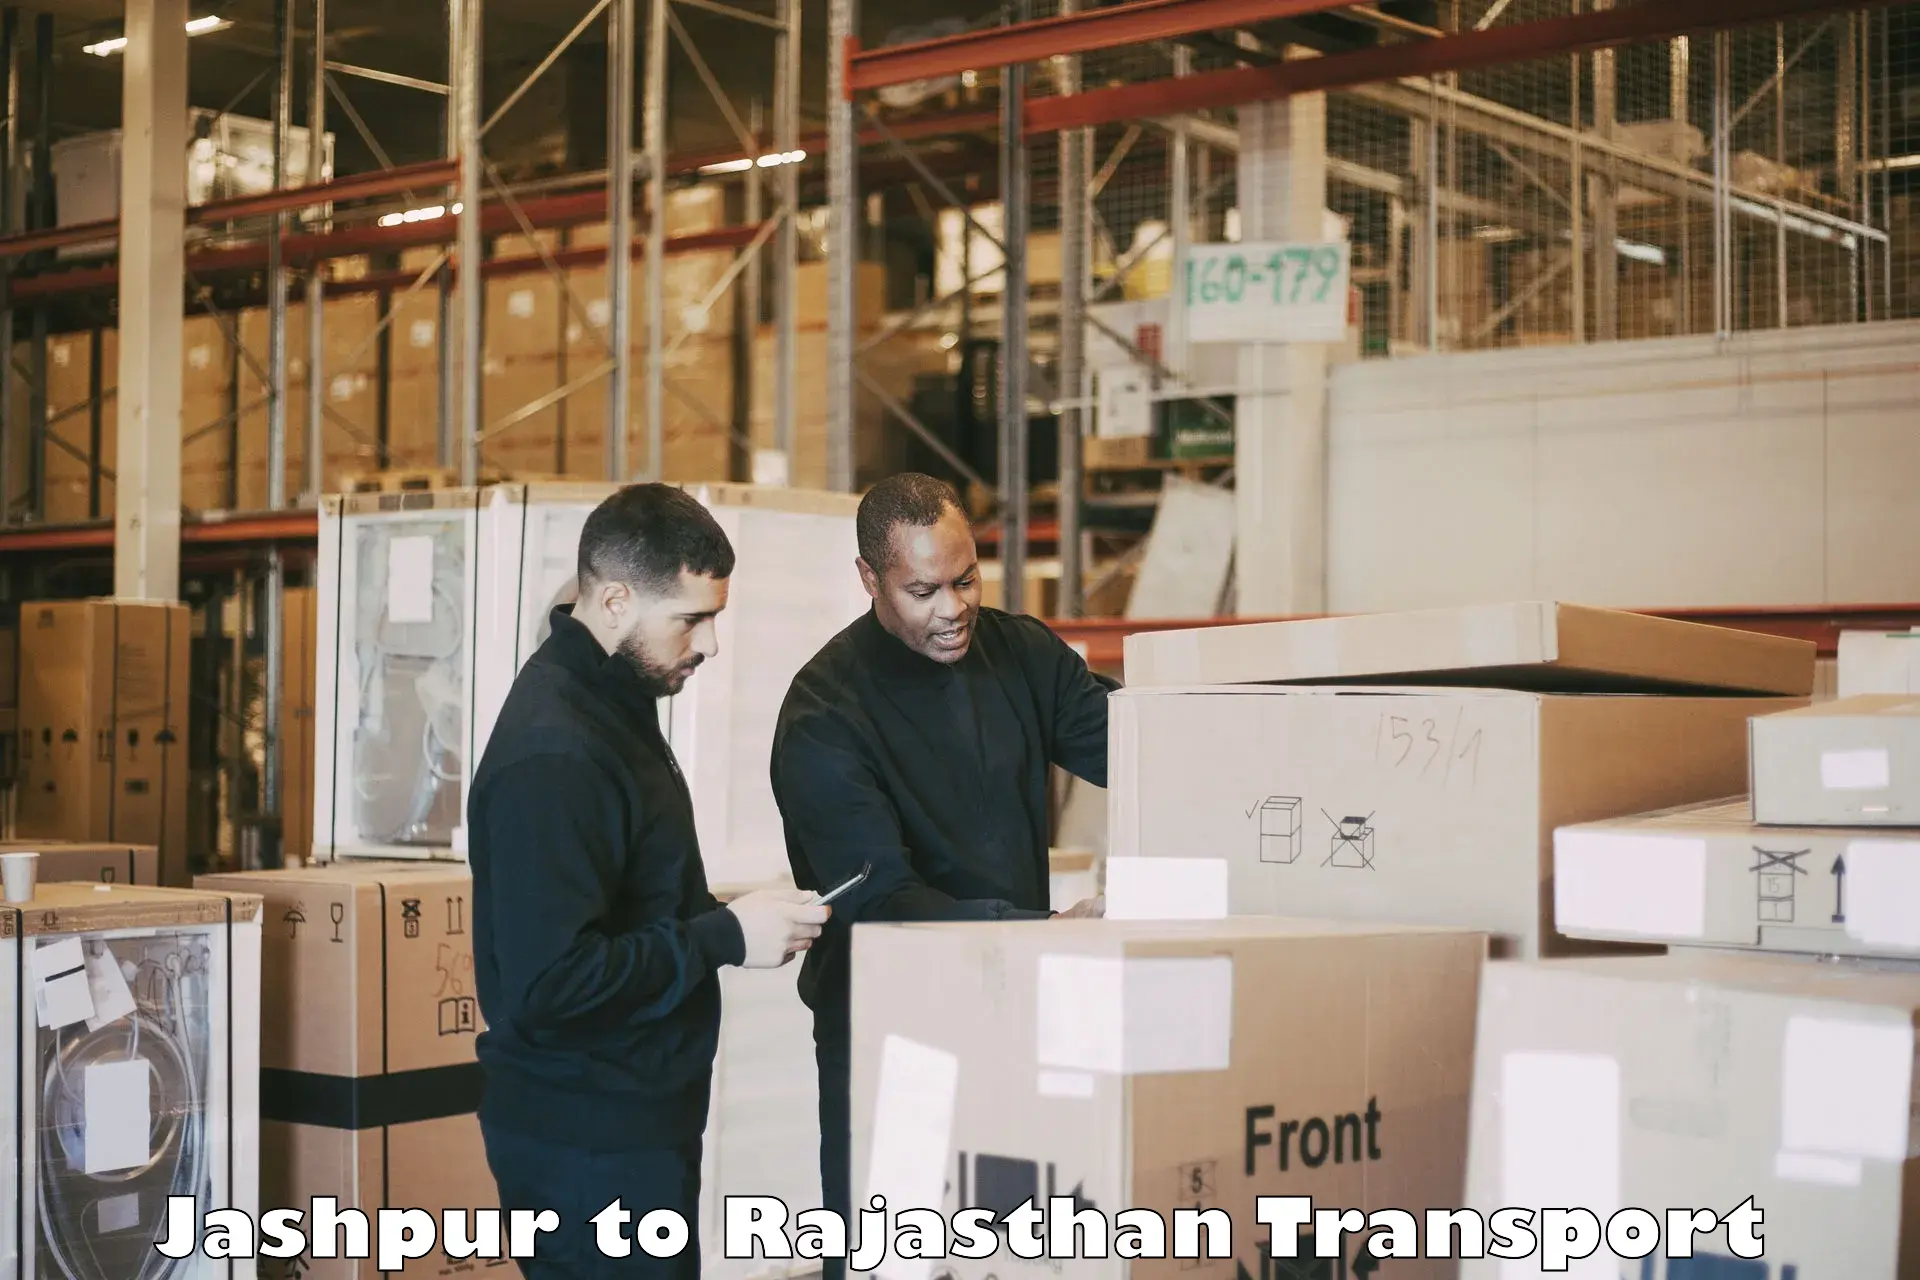 Daily parcel service transport Jashpur to Jaipur